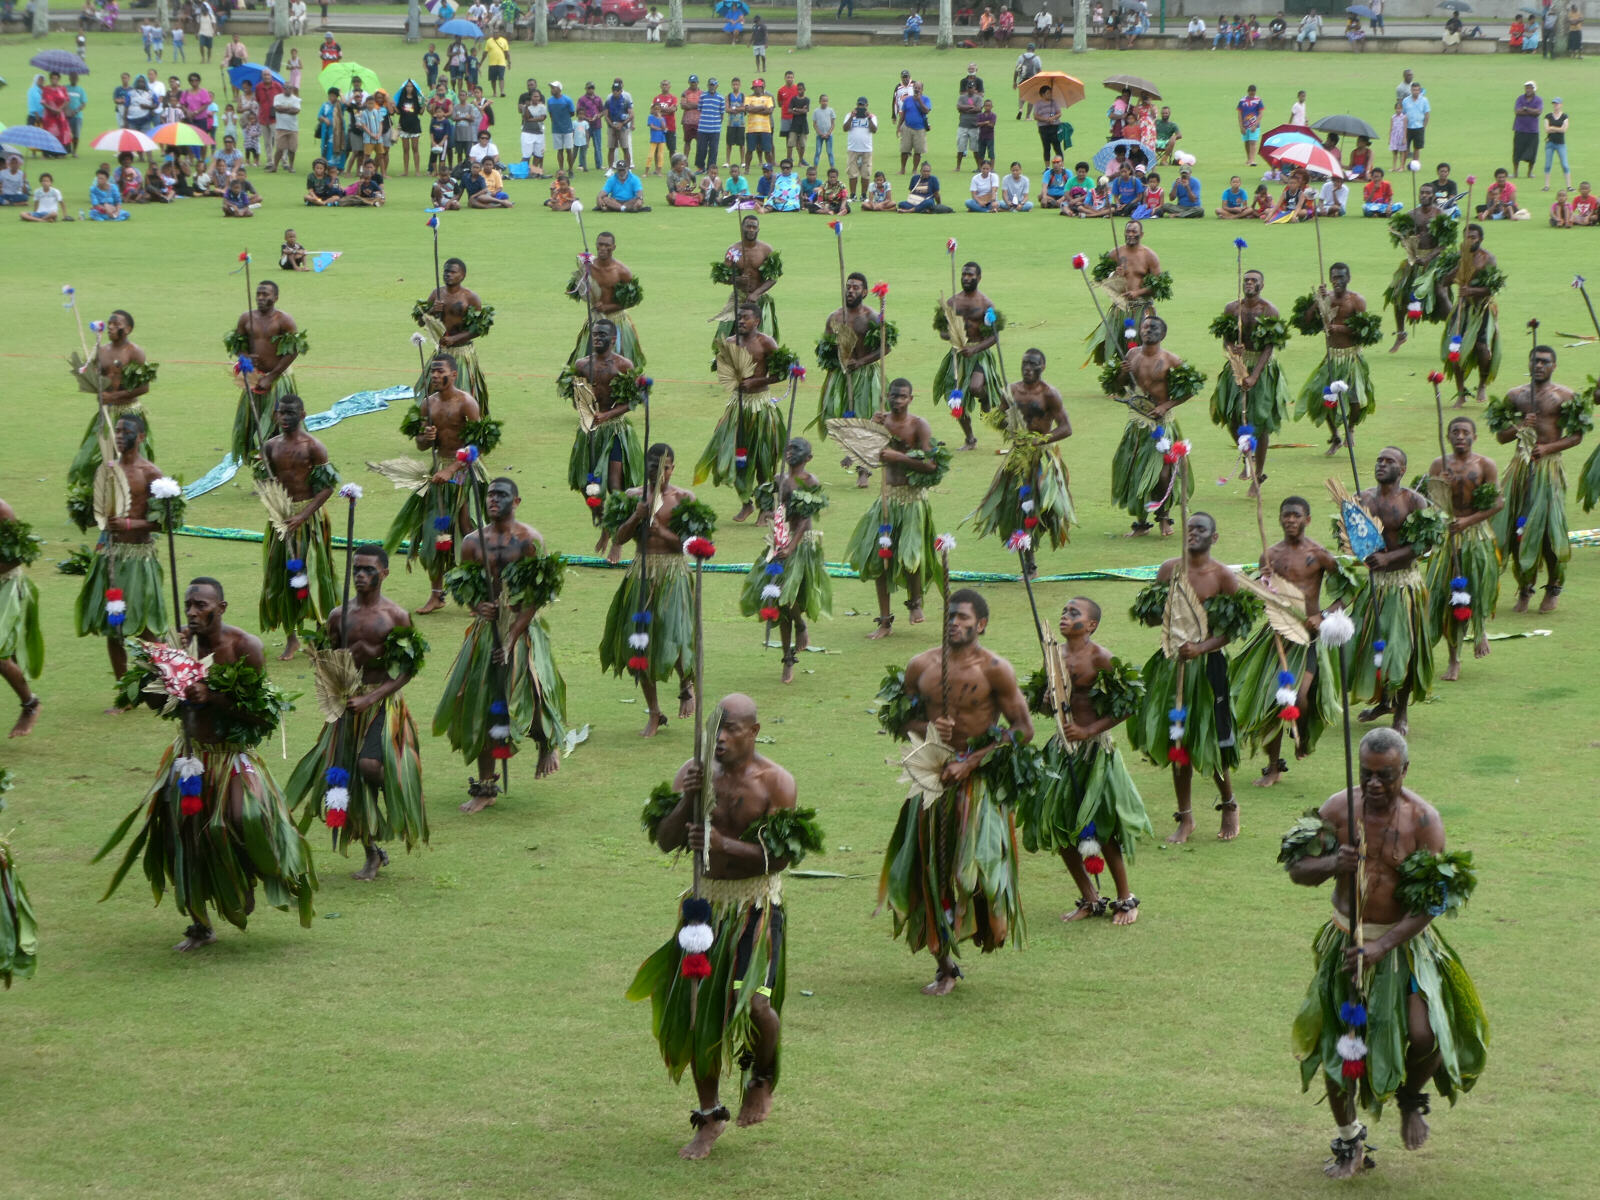 Tribal dancing at a celebration in Suva, Fiji